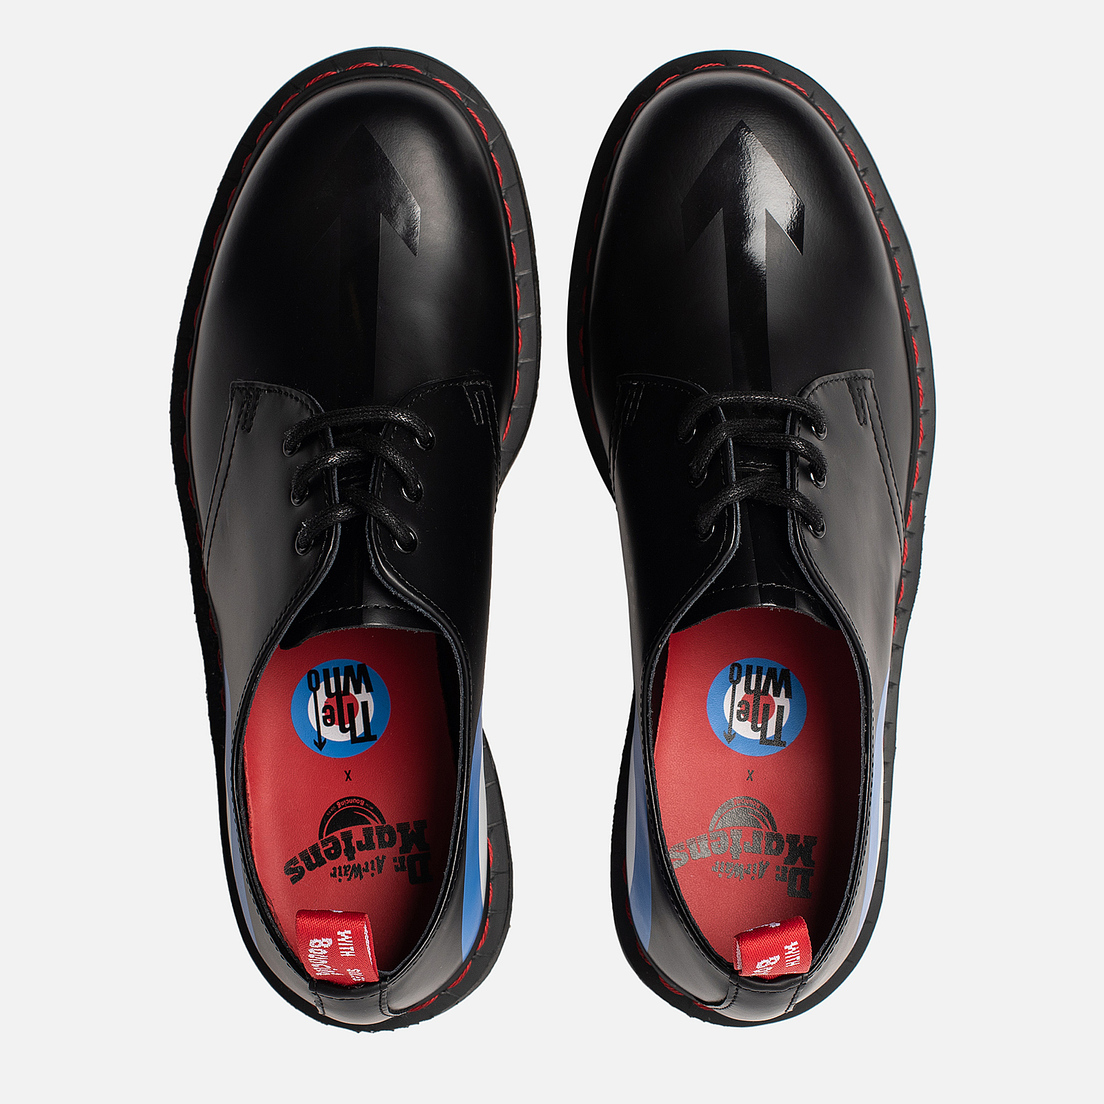 Dr. Martens Мужские ботинки x The Who 1461